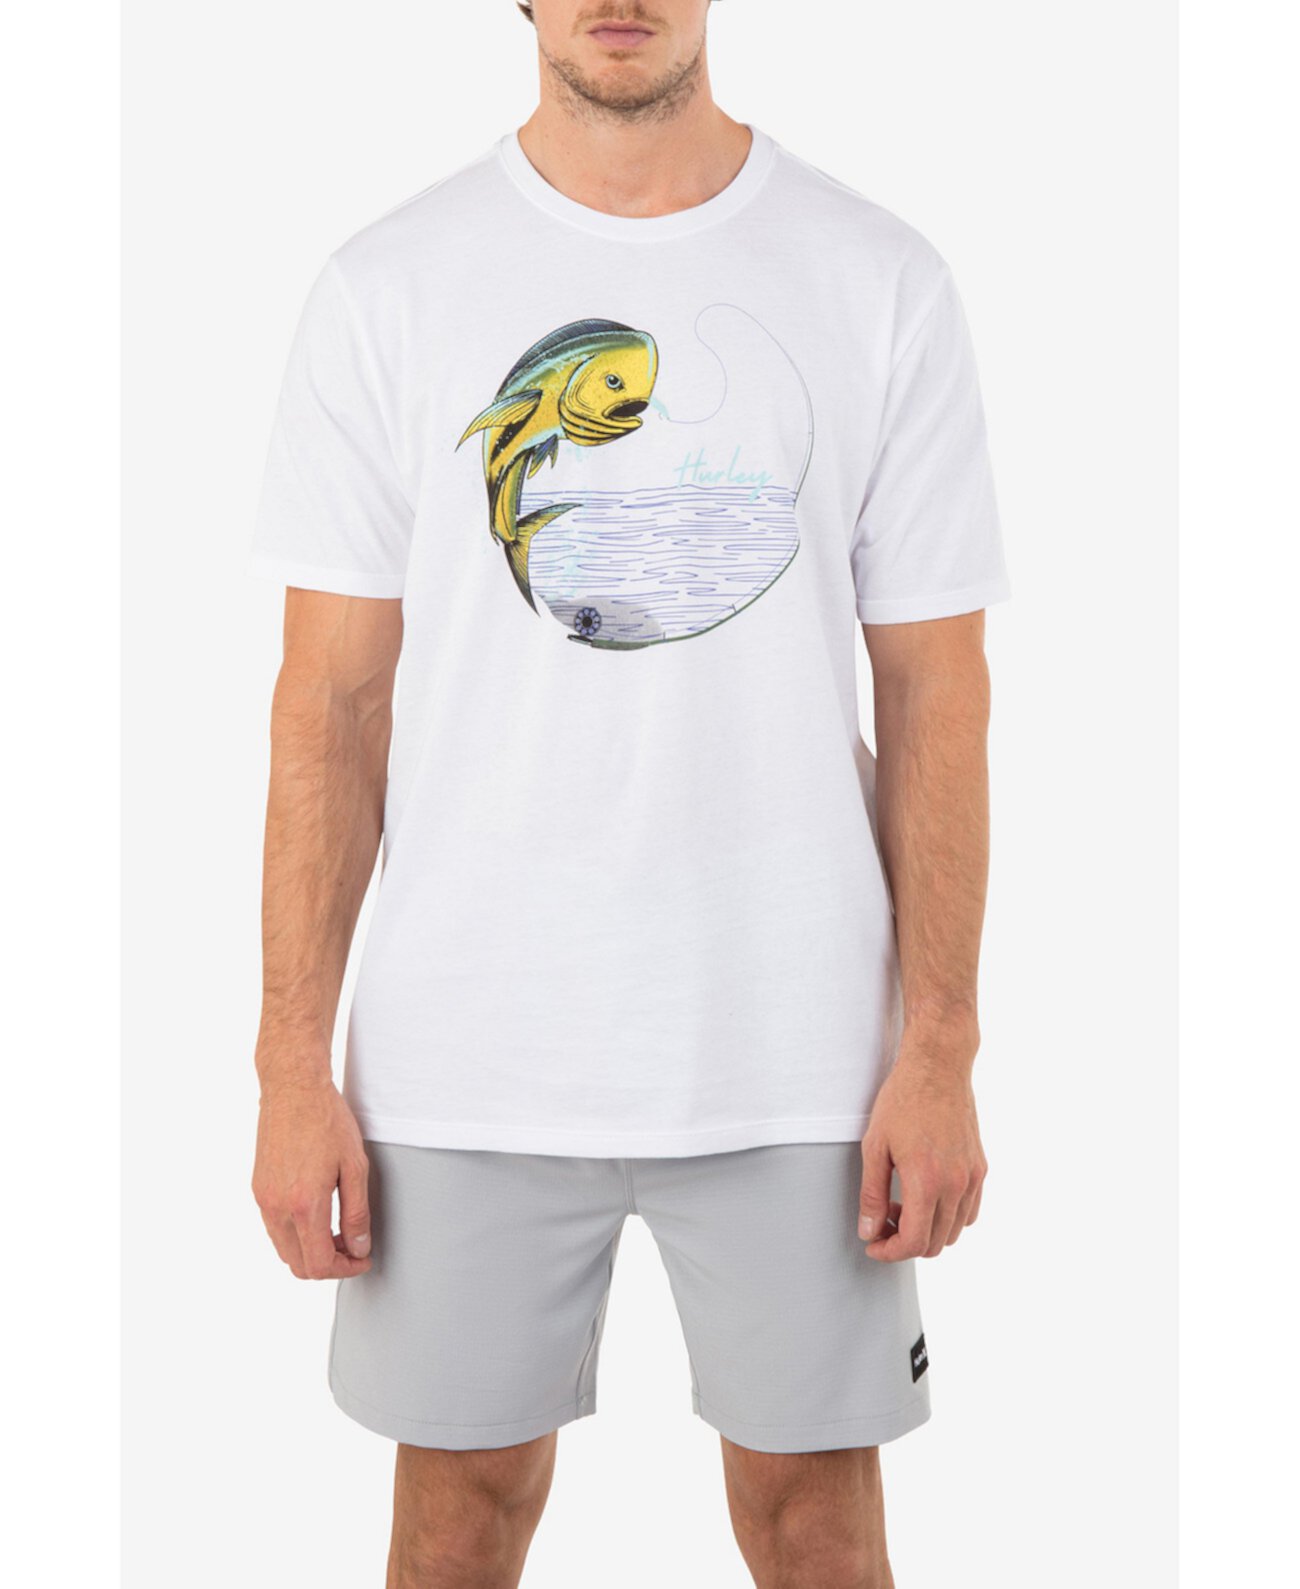 Мужская повседневная футболка с короткими рукавами и рыбой Hurley